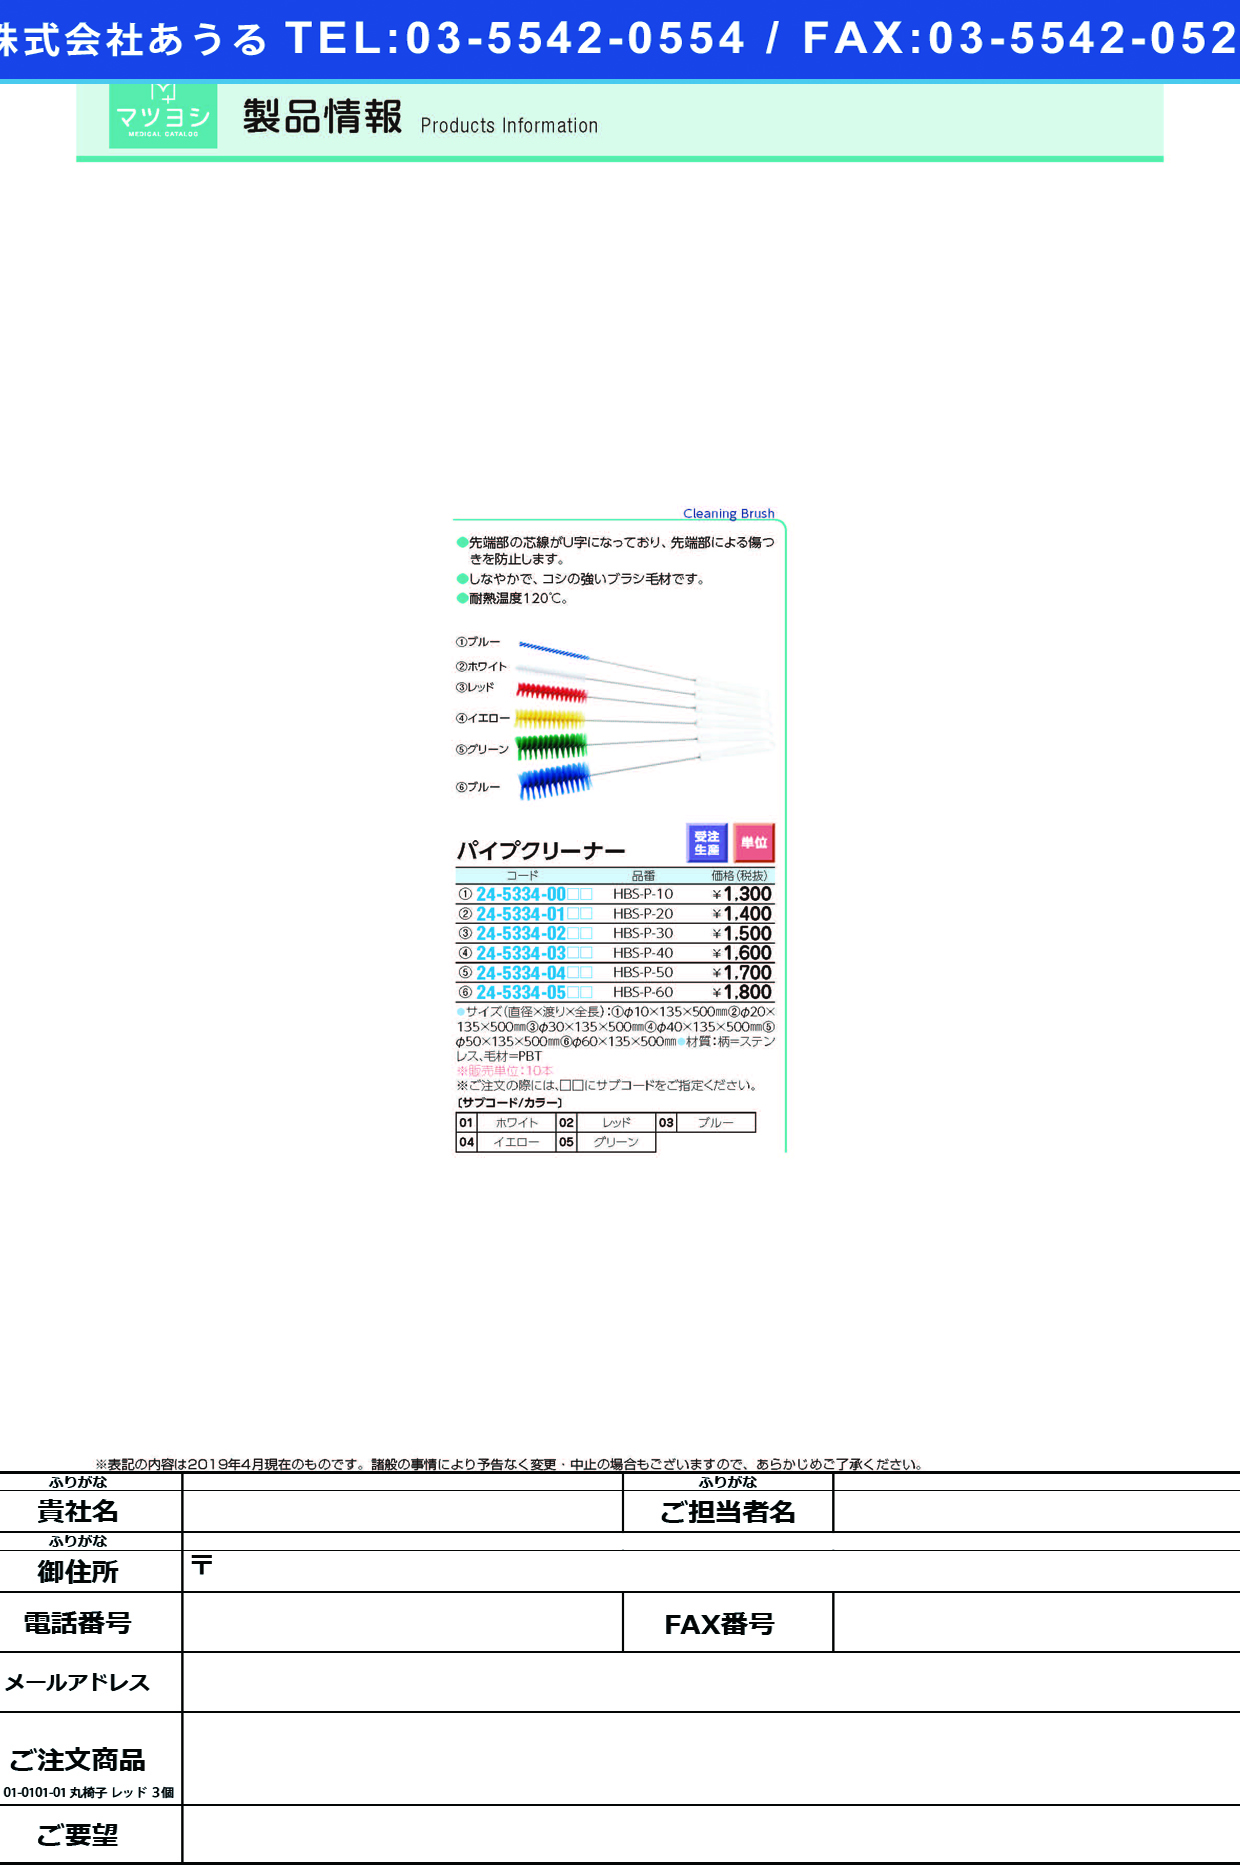 (24-5334-05)パイプクリーナー HBS-P-60 ﾊﾟｲﾌﾟｸﾘｰﾅｰ ホワイト【10本単位】【2019年カタログ商品】